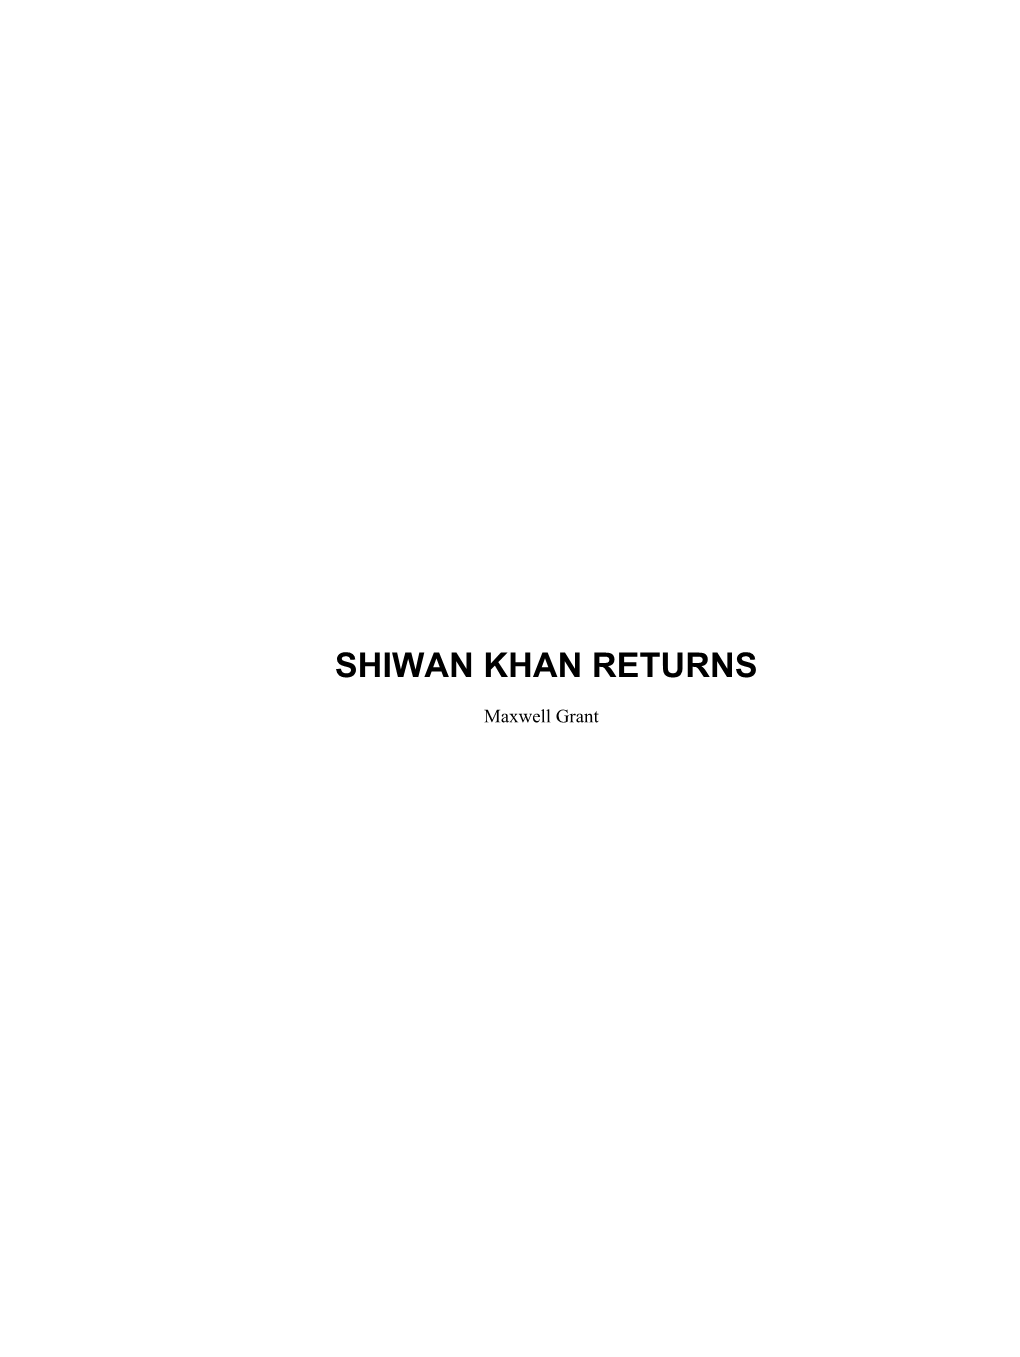 Shiwan Khan Returns